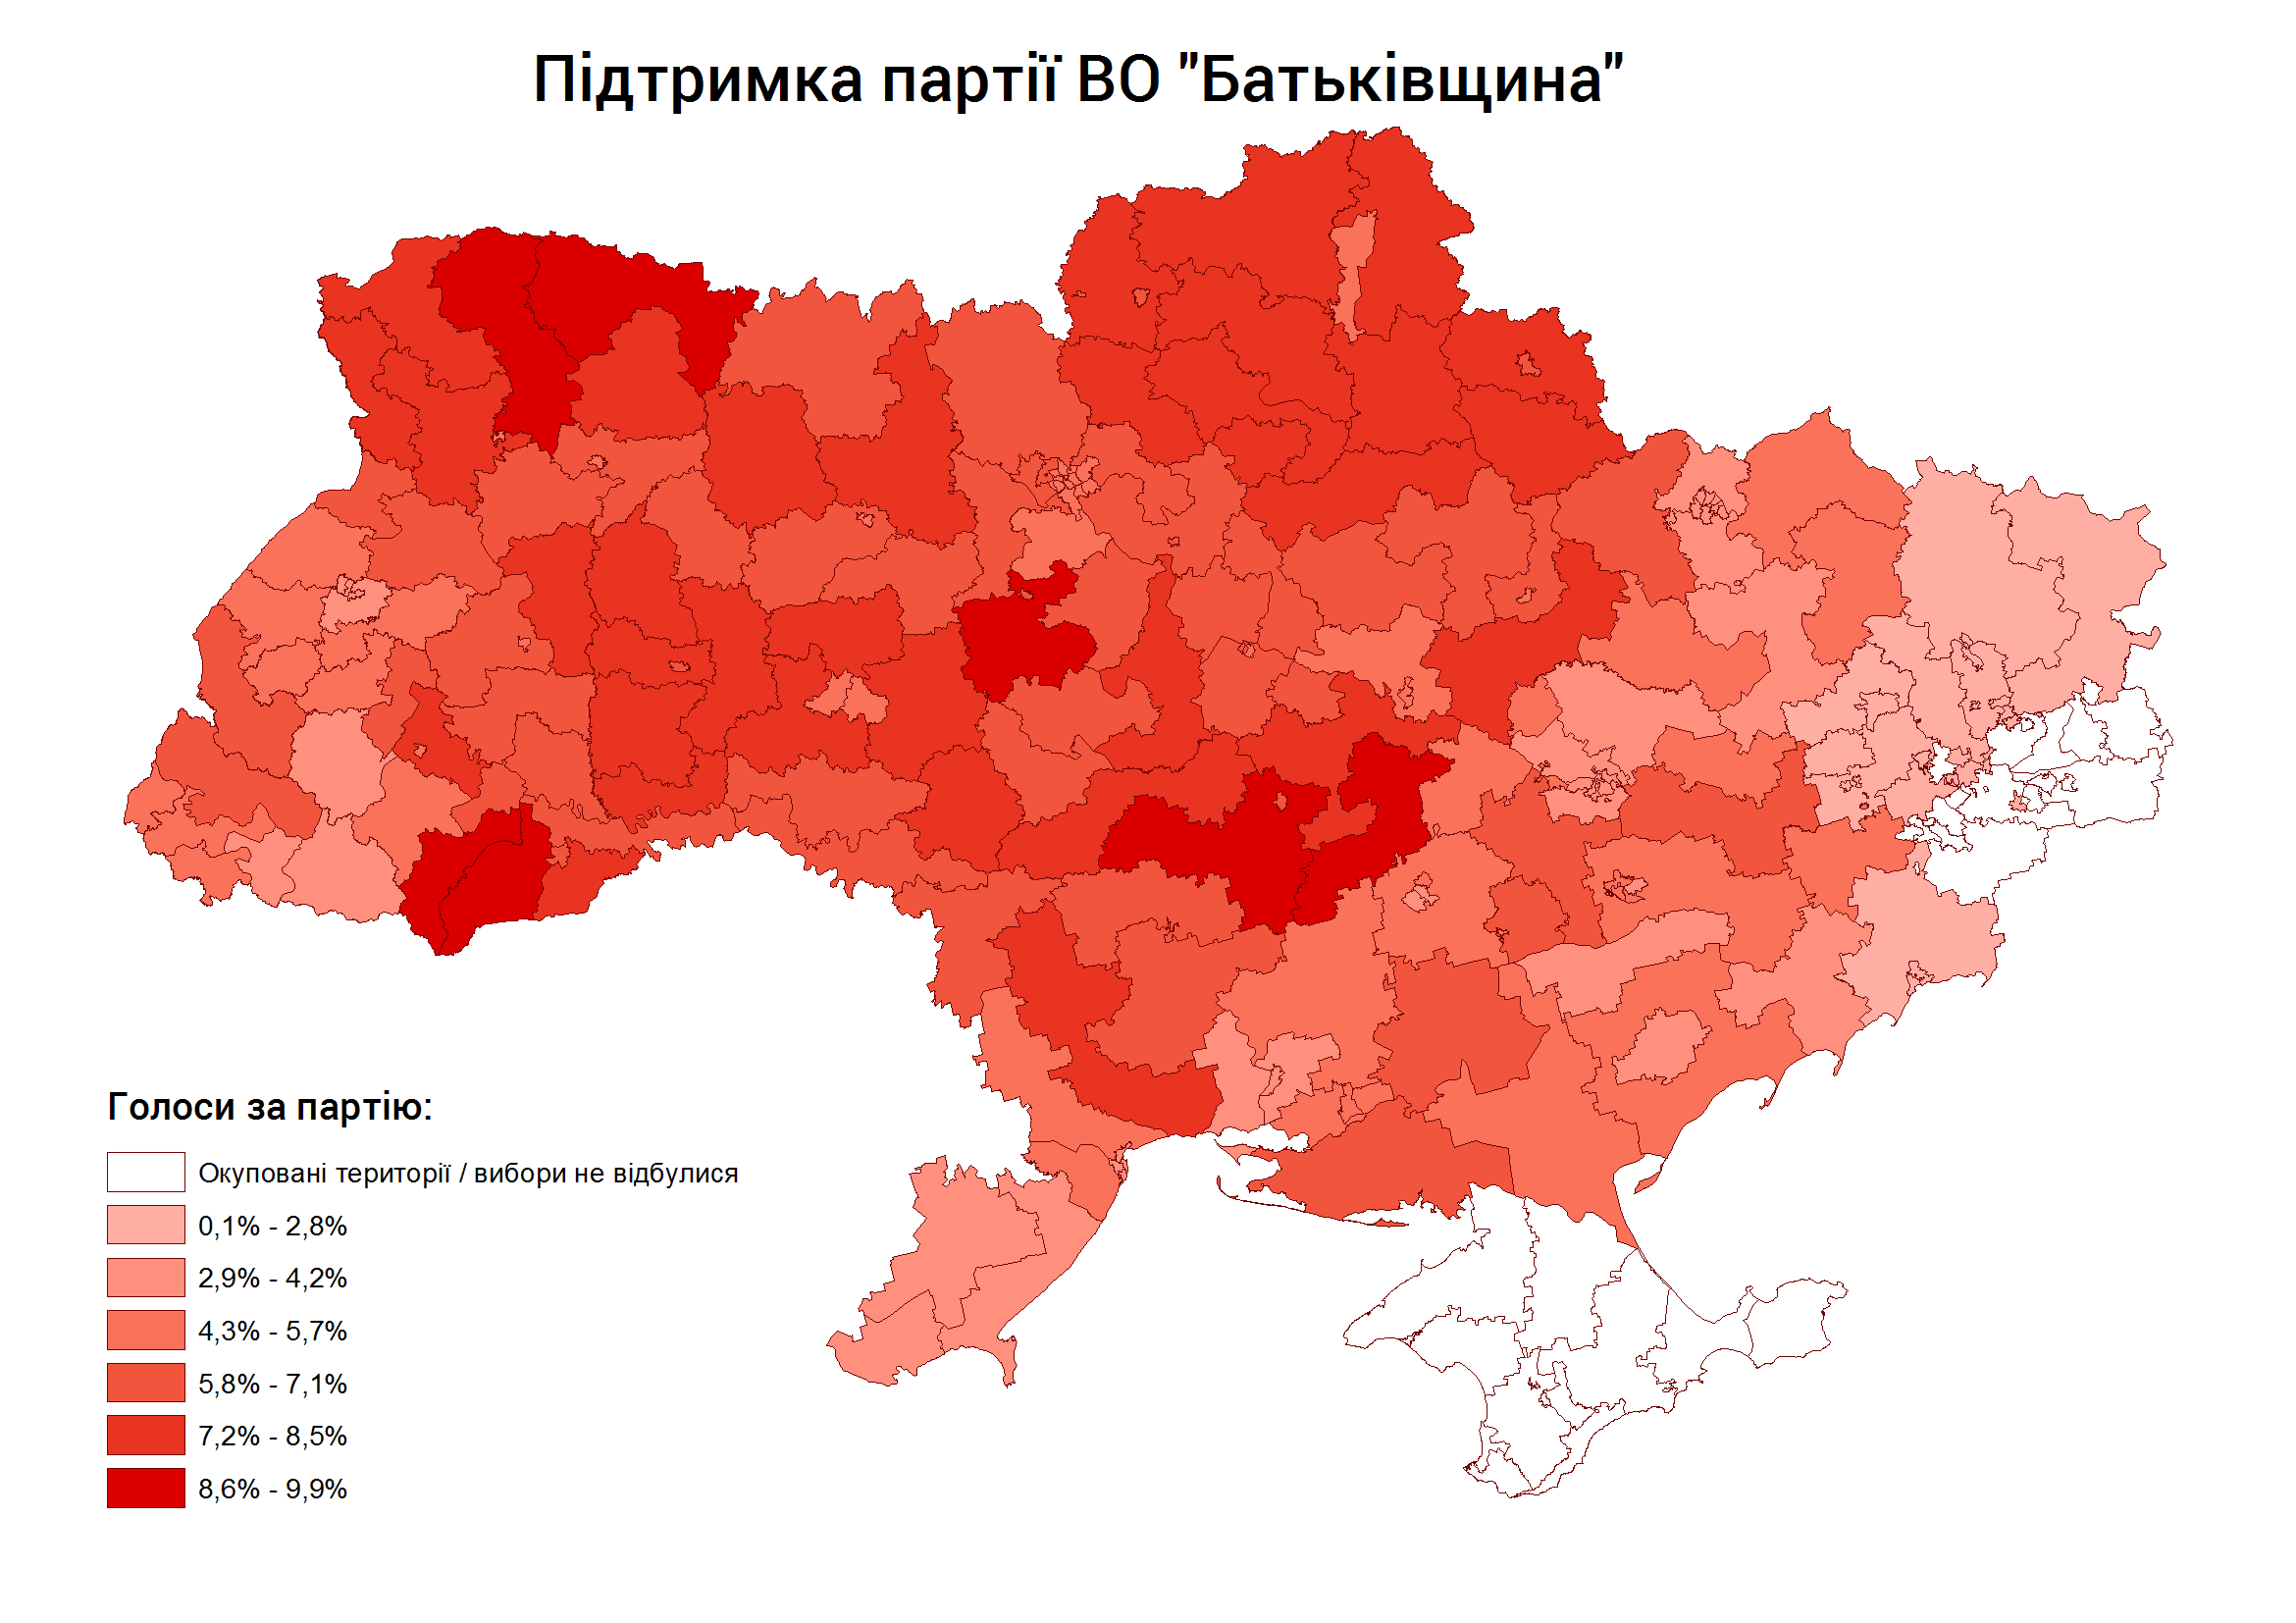 0 Voters for Batkivshchyna